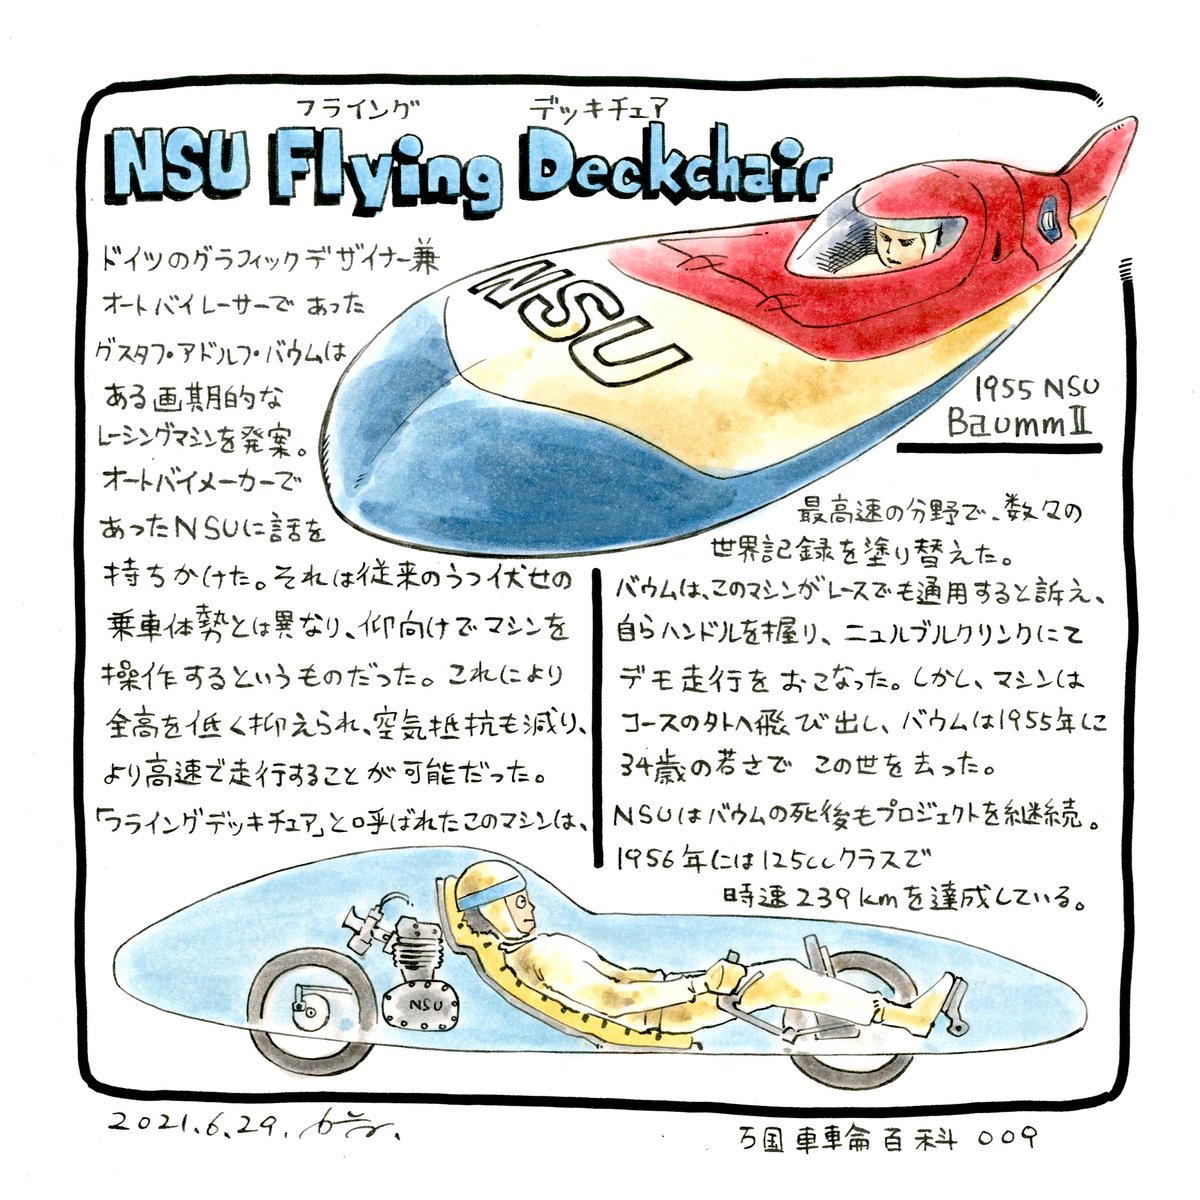 二輪車の概念を打ち破った
レコードブレイカー。

NSU フライング デッキチェア
NSU Flying Deckchair

#万国車輪百科 第9回 